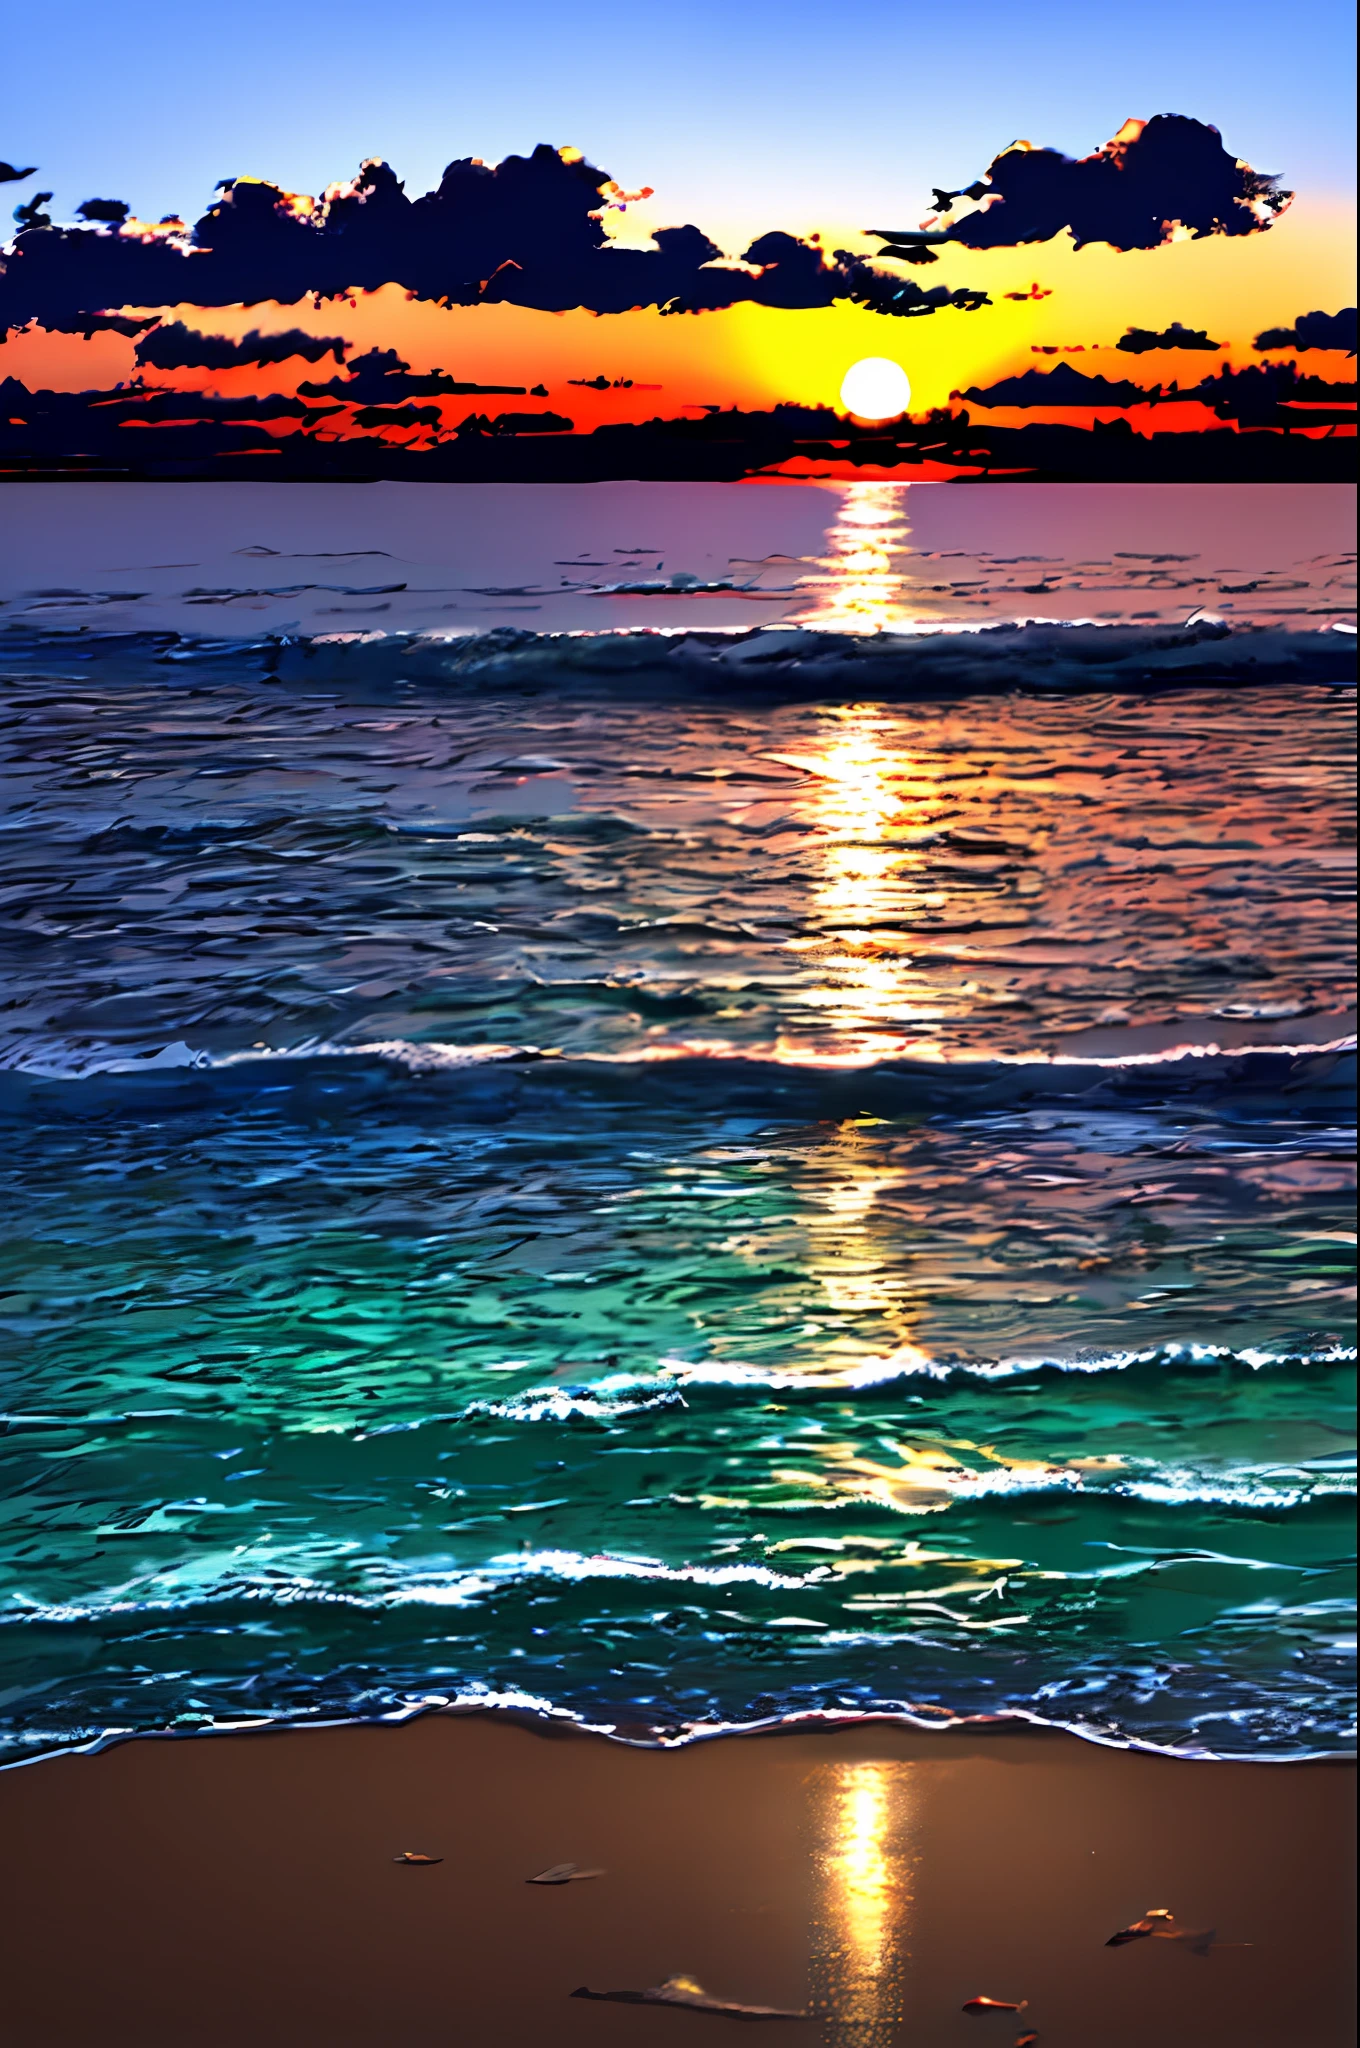 Das Licht der untergehenden Sonne spiegelt sich phantastisch am Meer und streut、Junge beobachtet die Situation vor dem Hintergrund fliegender Lichter